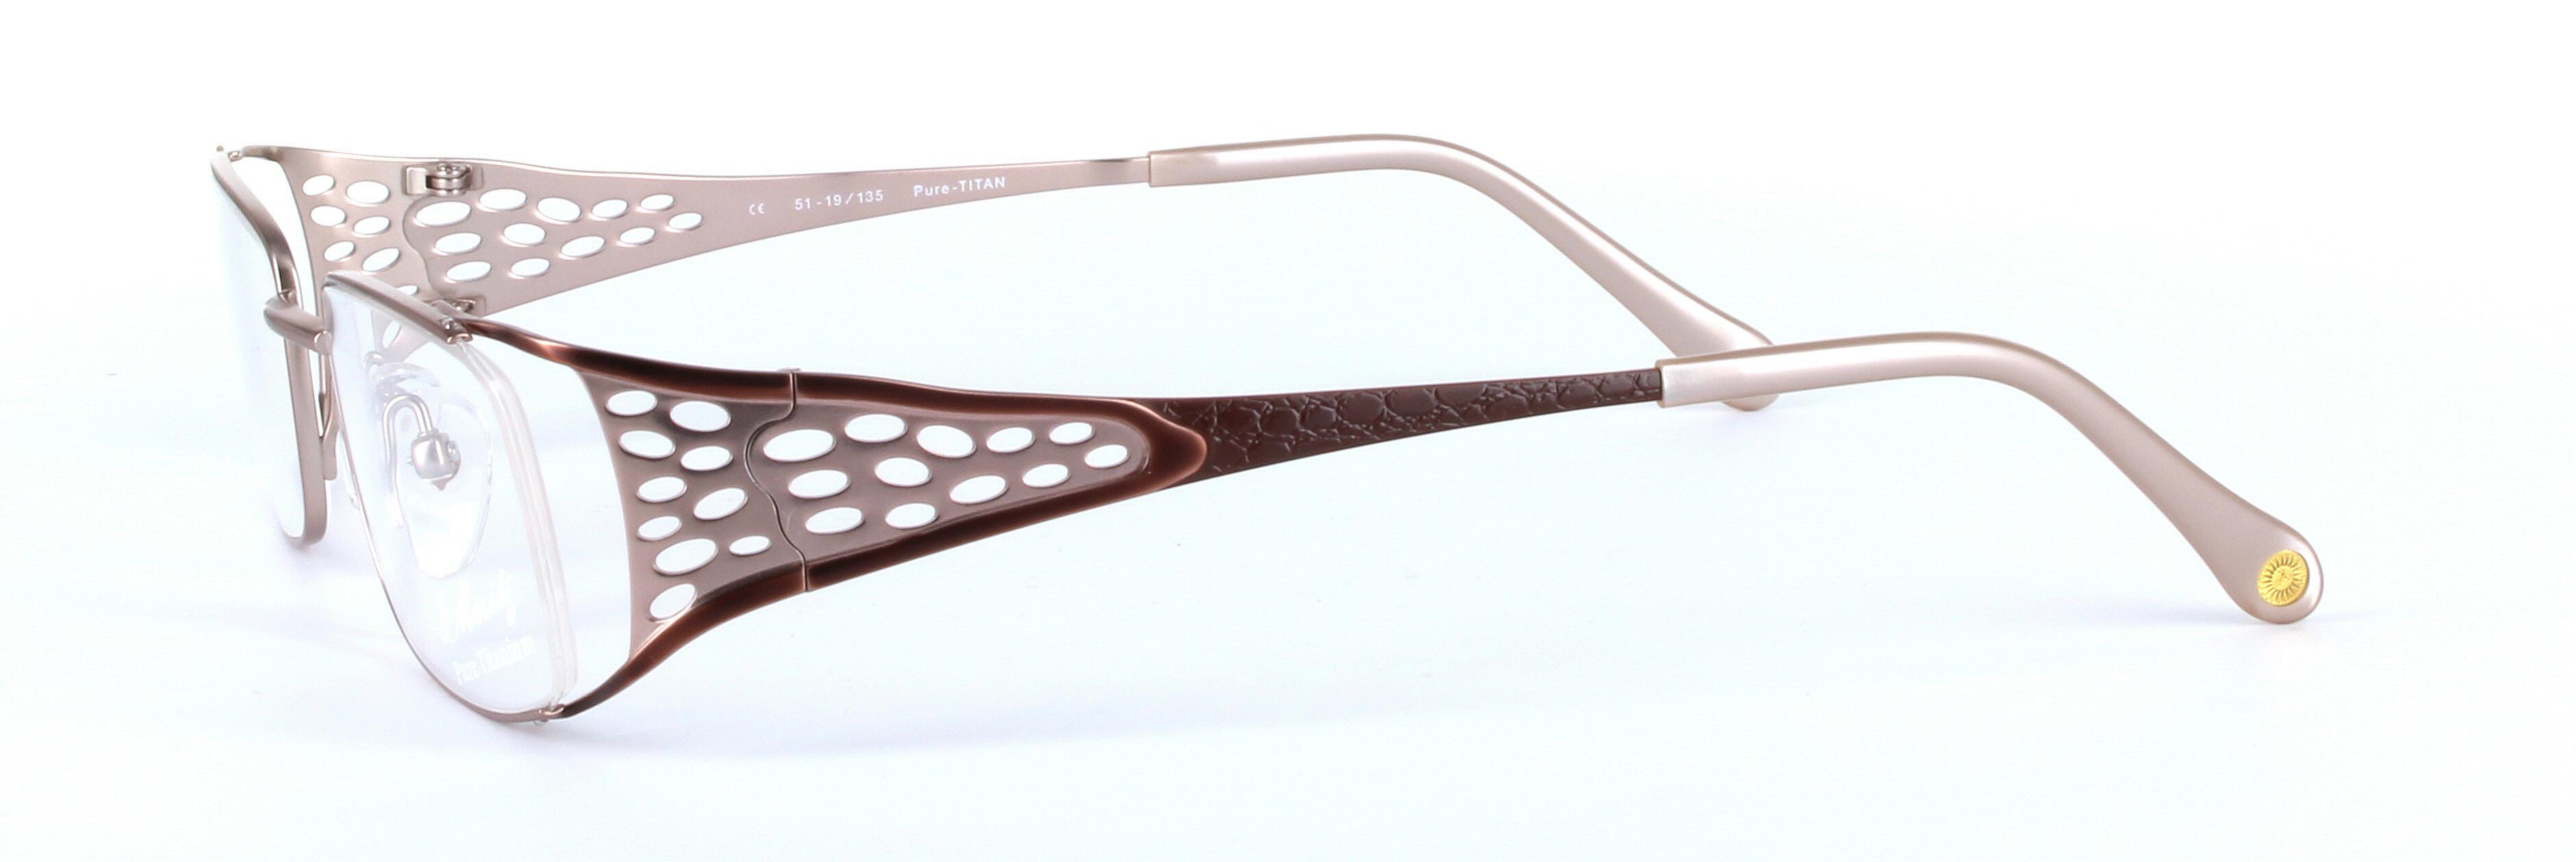 L'ART St-MORITZ (4782-002) Brown Full Rim Rectangular Metal Glasses - Image View 2